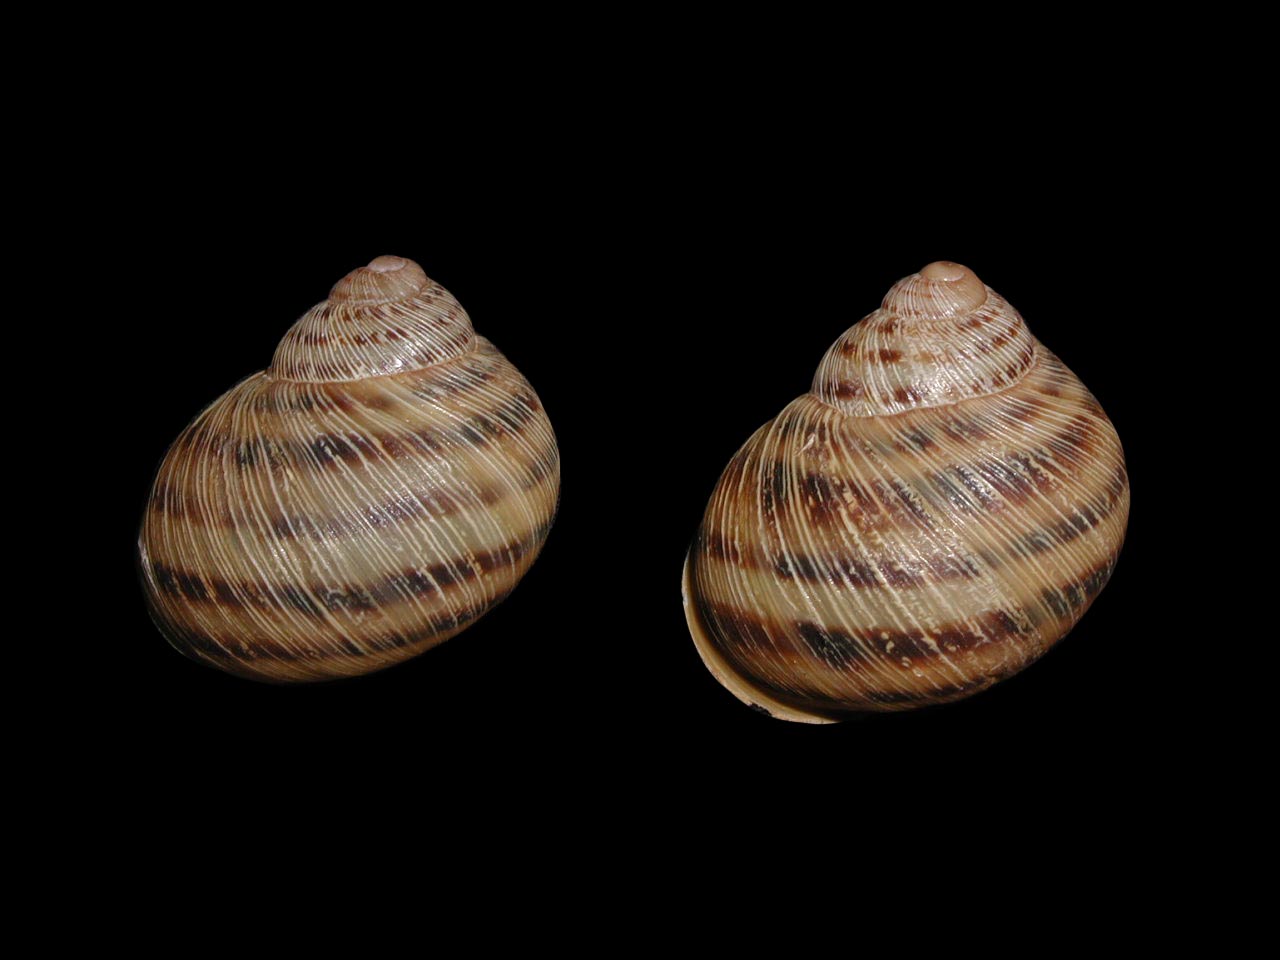 Erctella mazzullii (De Cristofori & Jan, 1832)